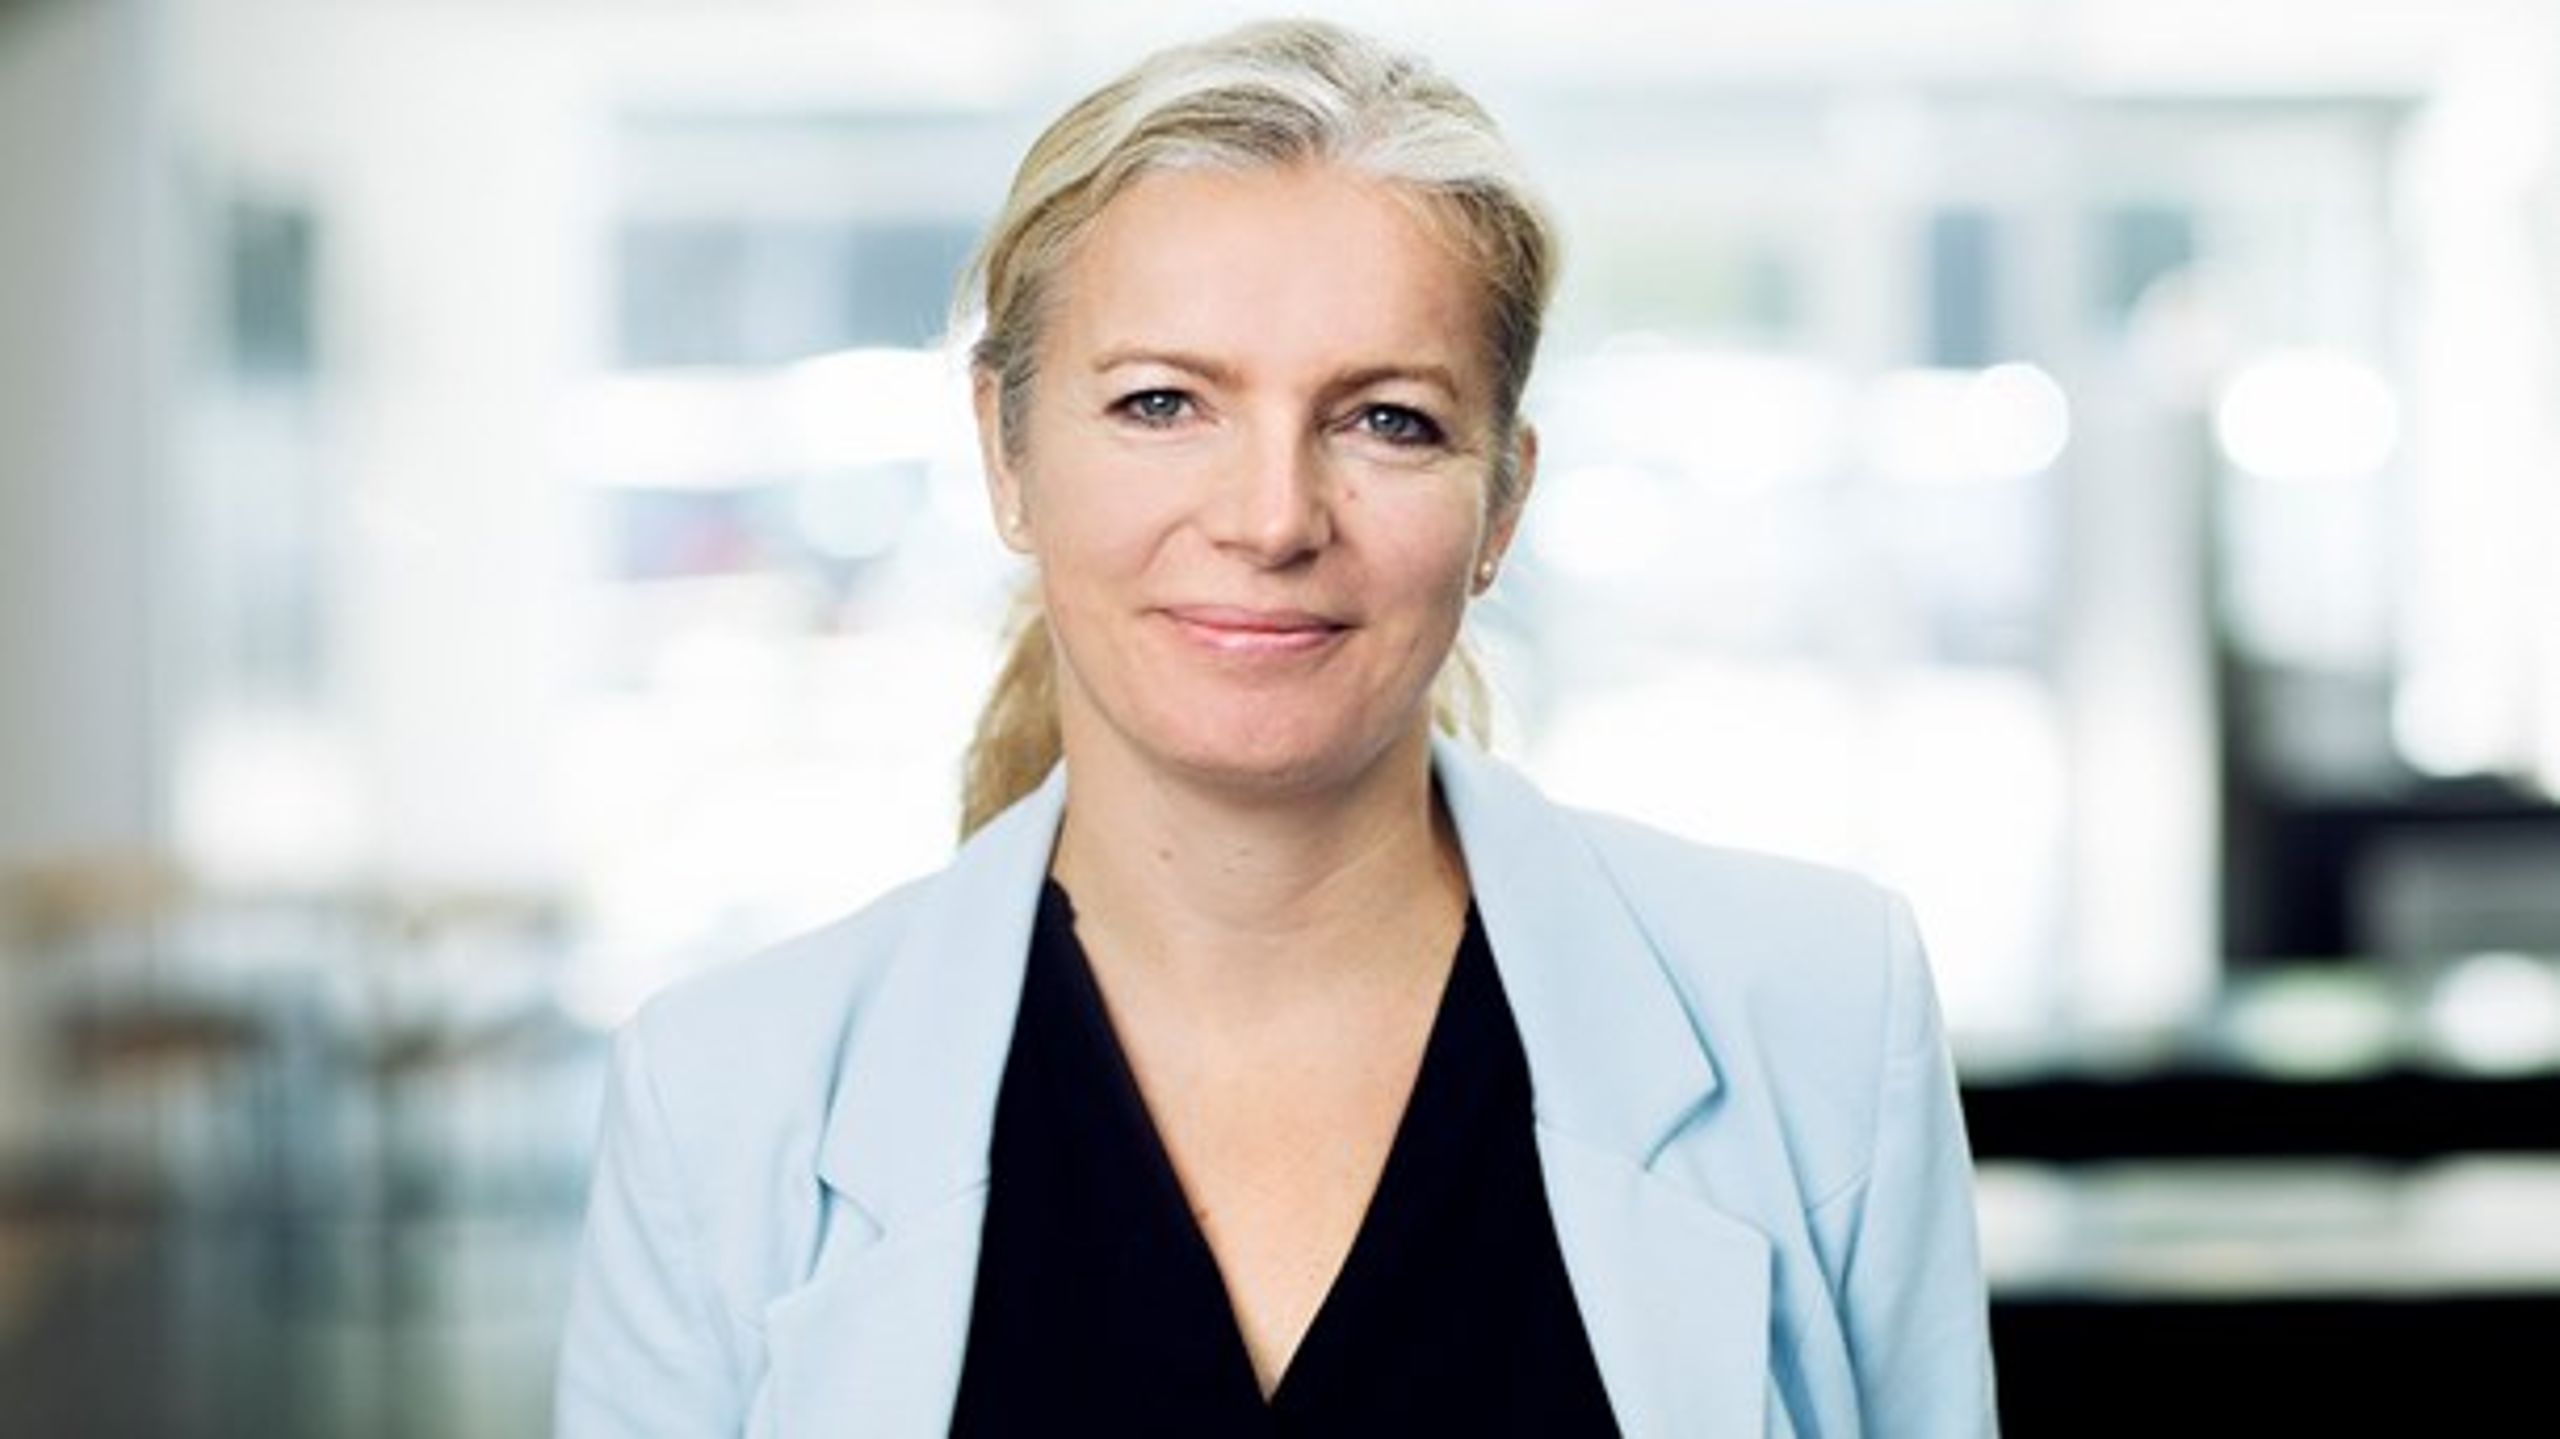 Anne Kristine Axelsson startede som ny administrerende direktør for AES &nbsp;i august 2016 og kom fra en stilling som departementschef i Kirkeministeriet.&nbsp;